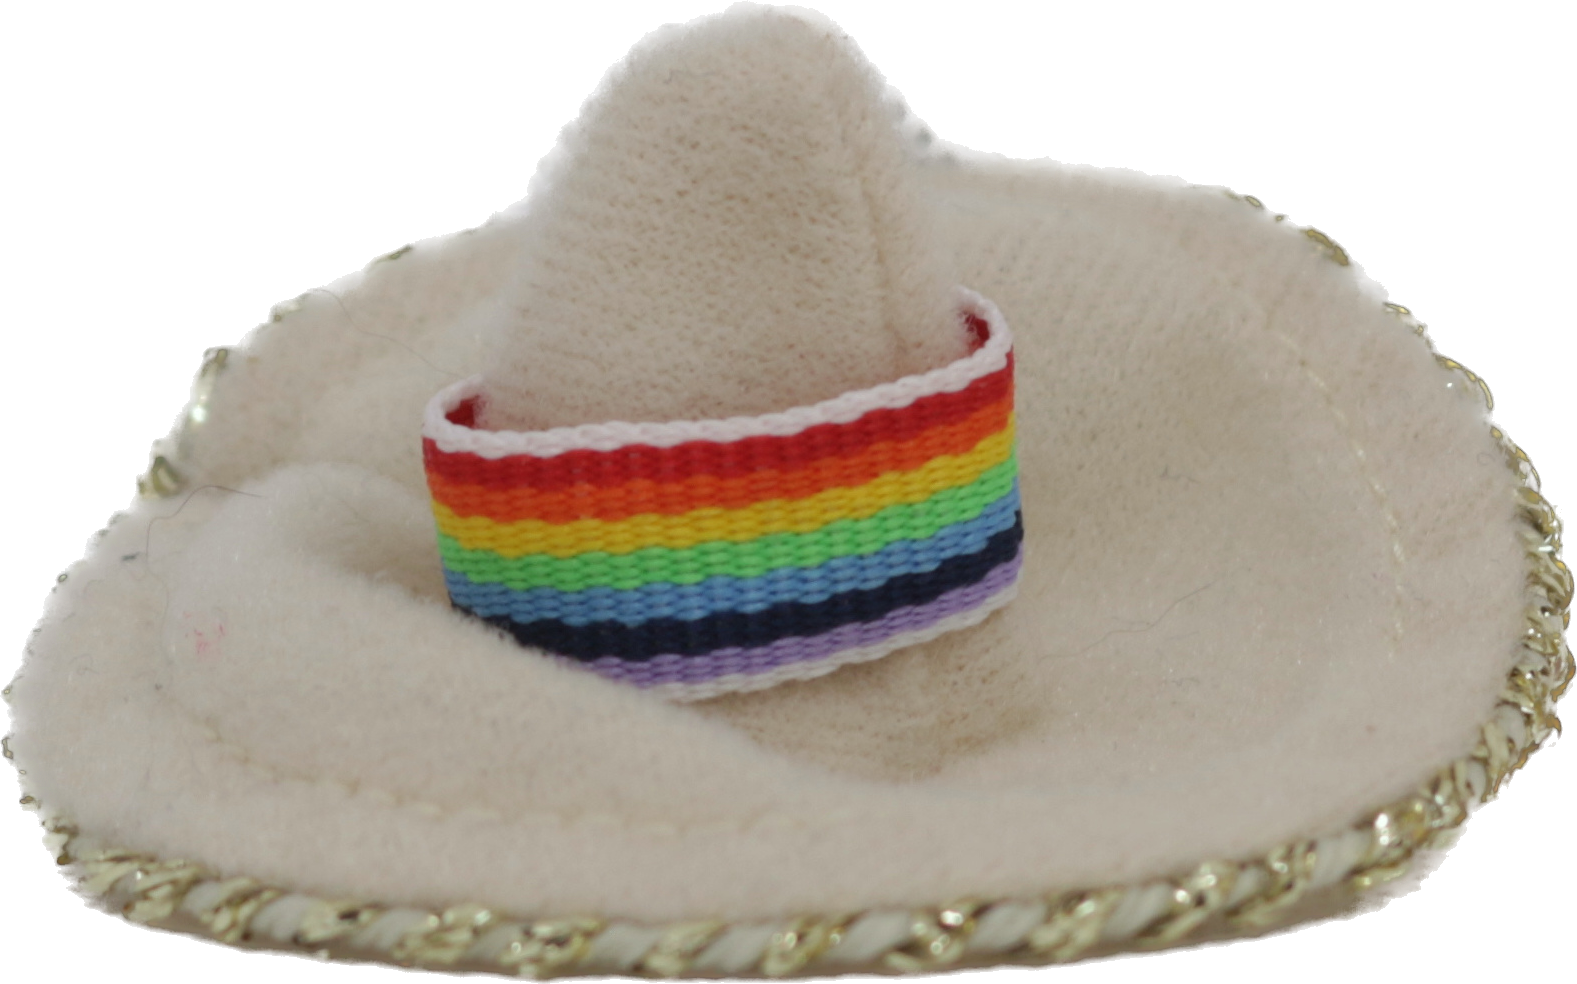 Sombrero